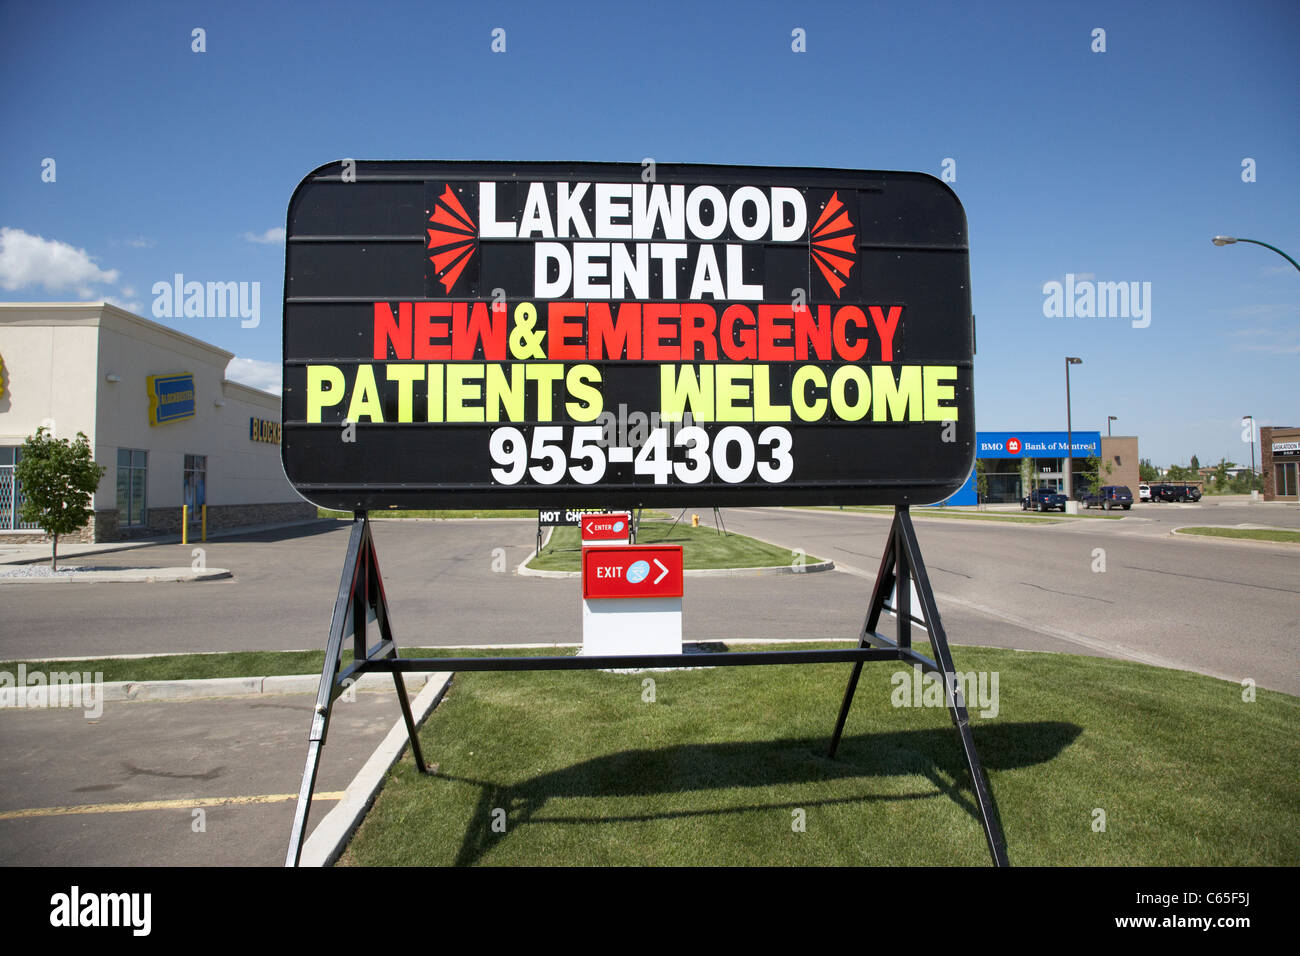 Carretera de escritura luminosa publicidad signo de negocios dentales en Saskatoon, Saskatchewan Canadá Foto de stock